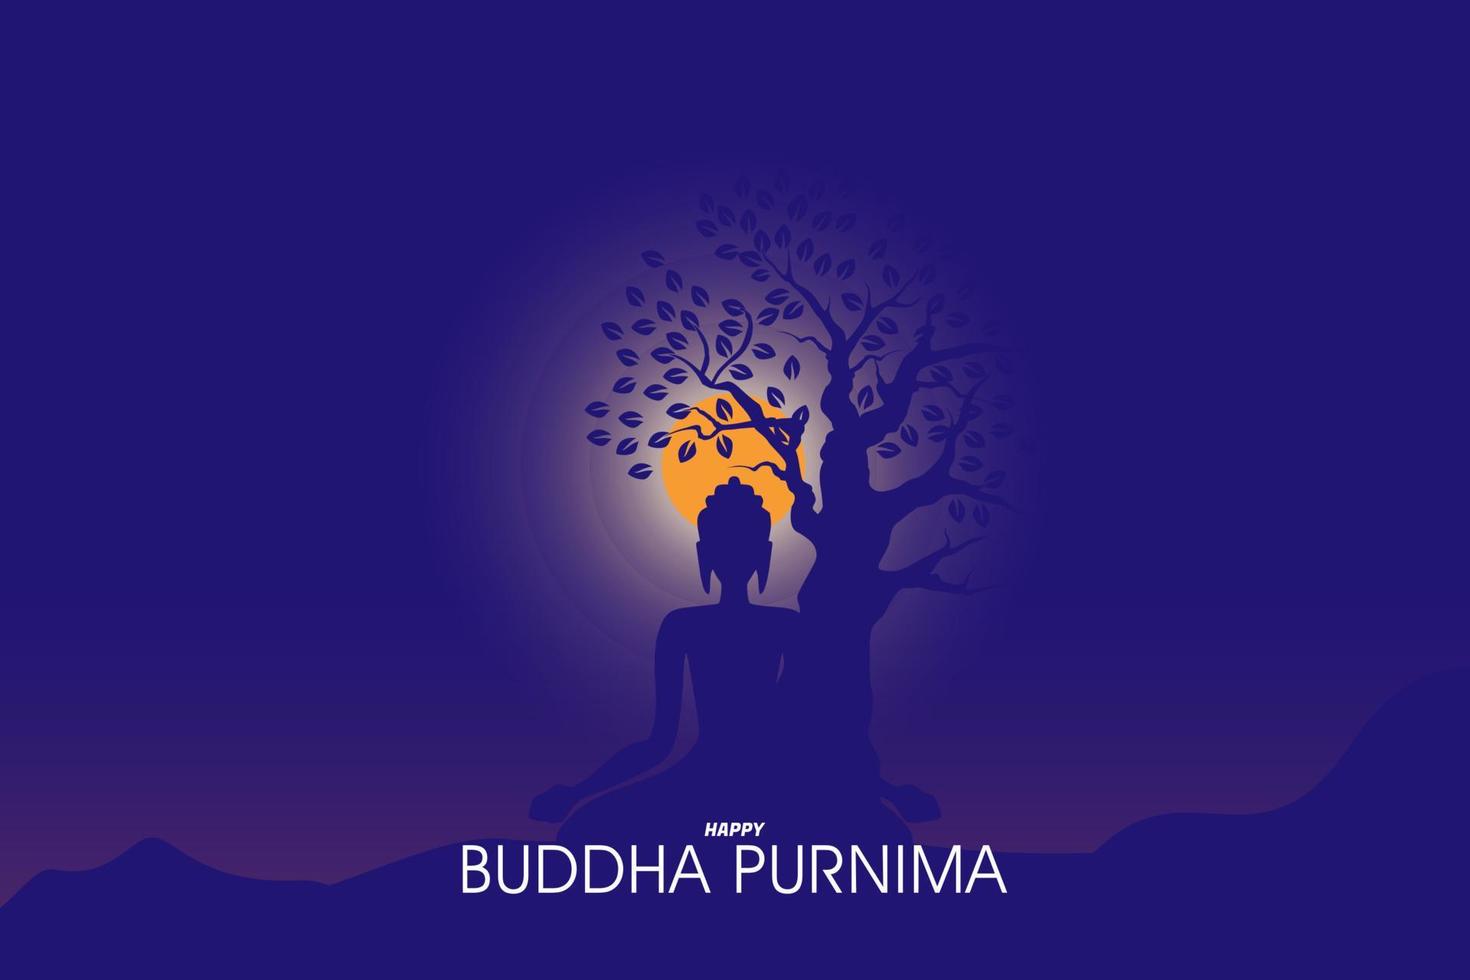 illustration av buddist meditation under en träd natt tid vektor